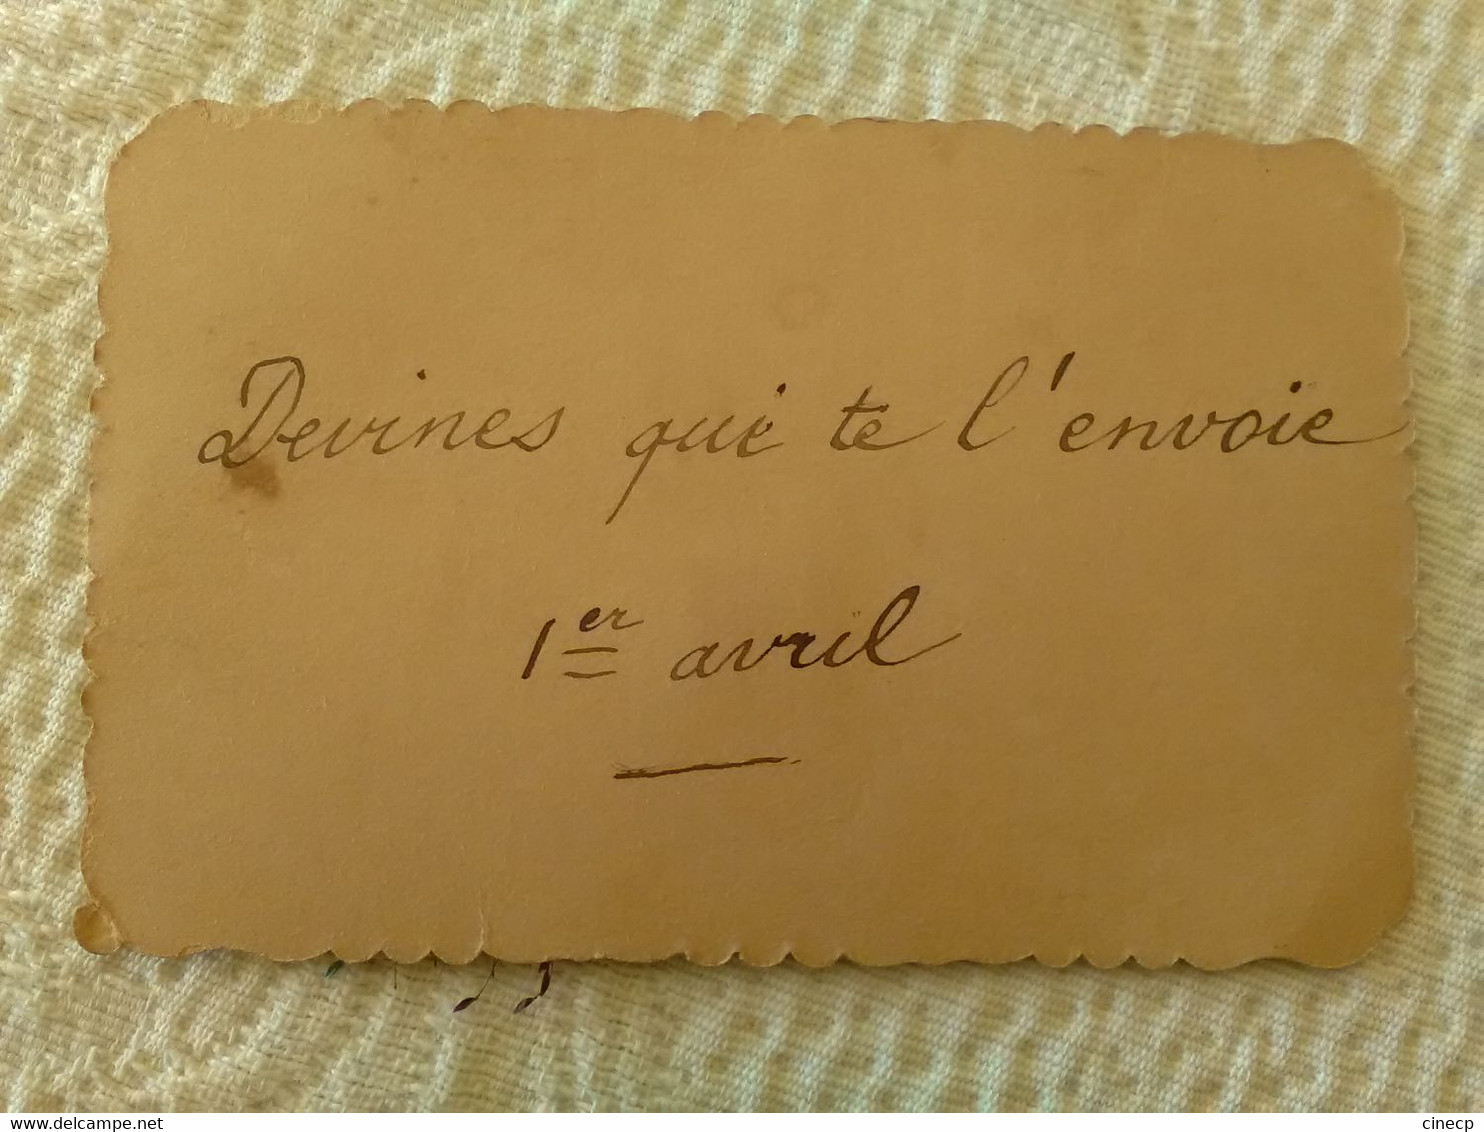 Lot De 2 CHROMO 1er Avril 1897 Petites Cartes Message D'amour Poisson Ange Fleurs - Anges